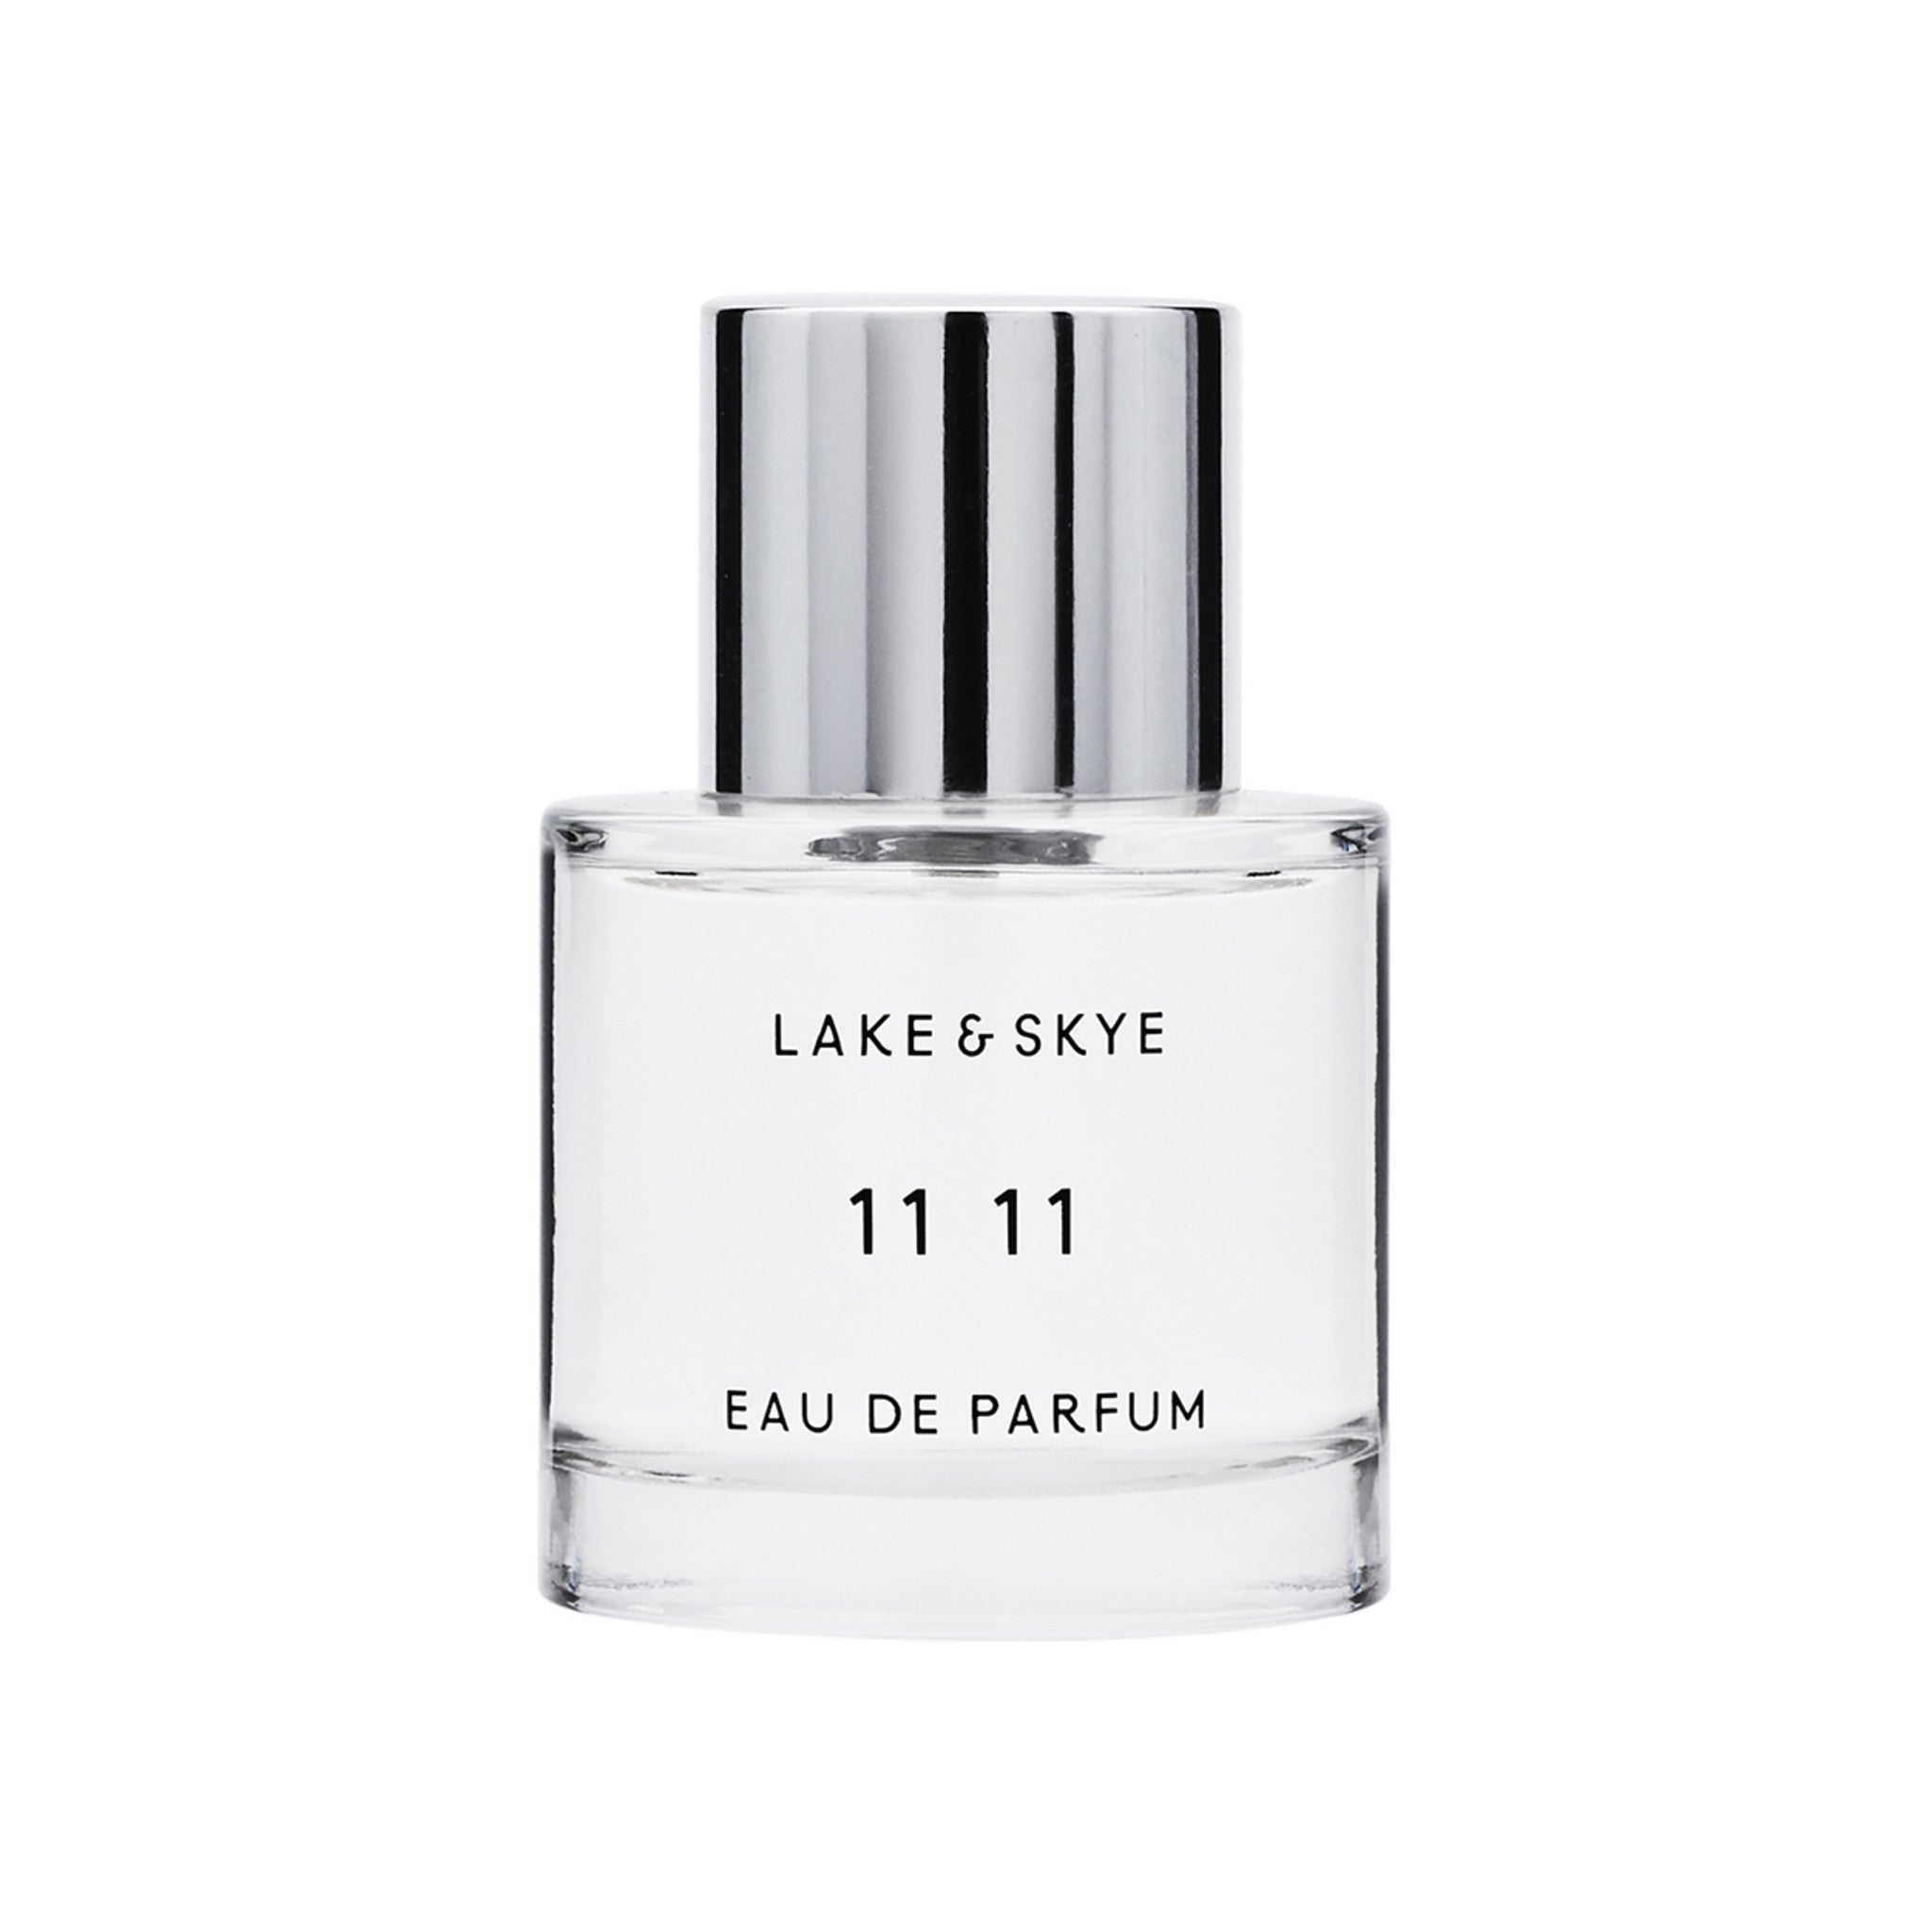 Lake & Skye 11 11 Eau de Parfum Size variant: 1.7oz main image.